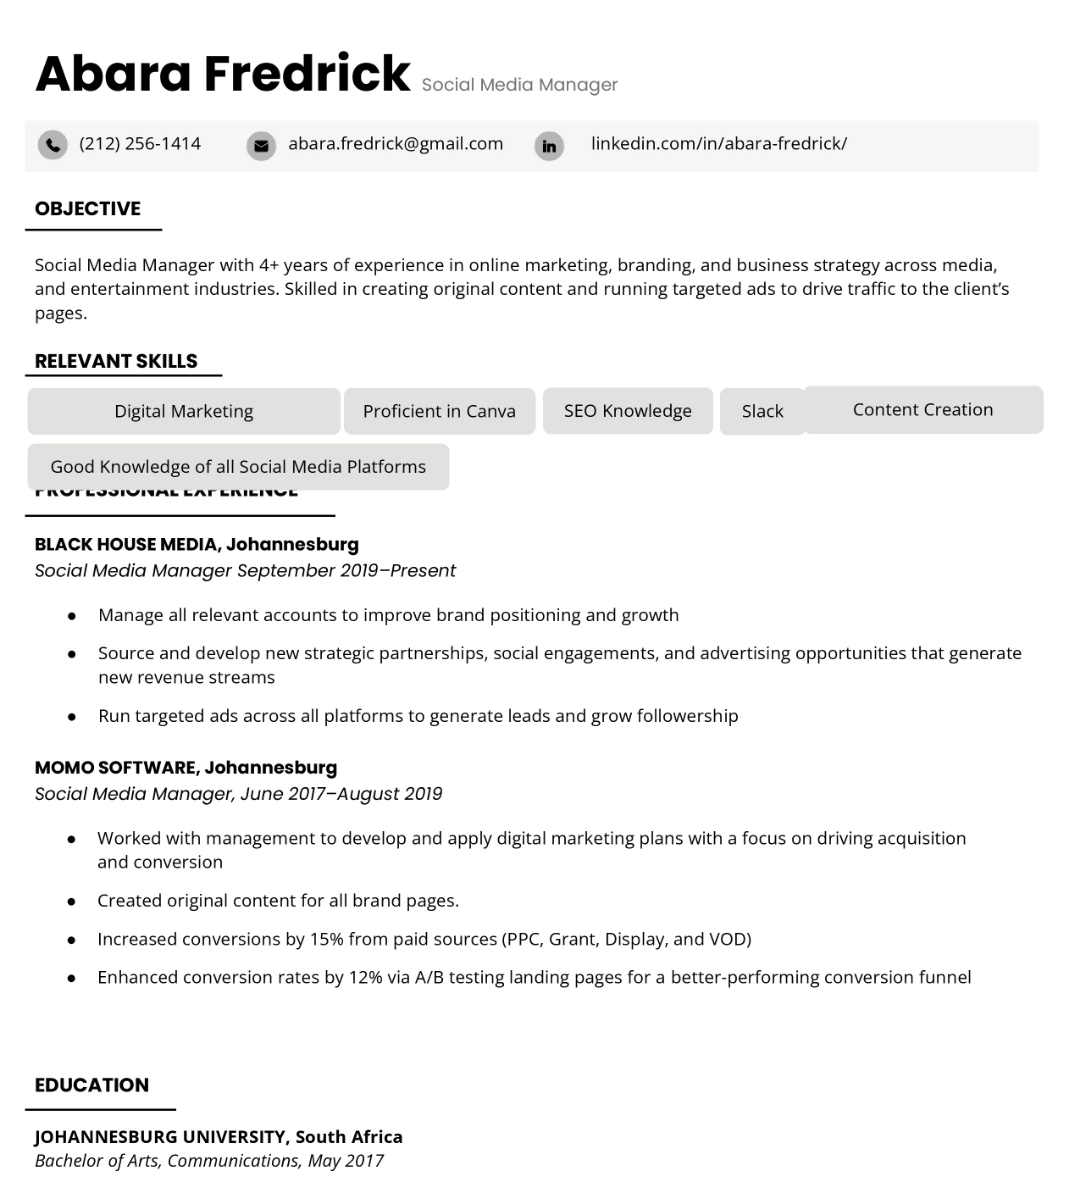 An image of a modern CV template 